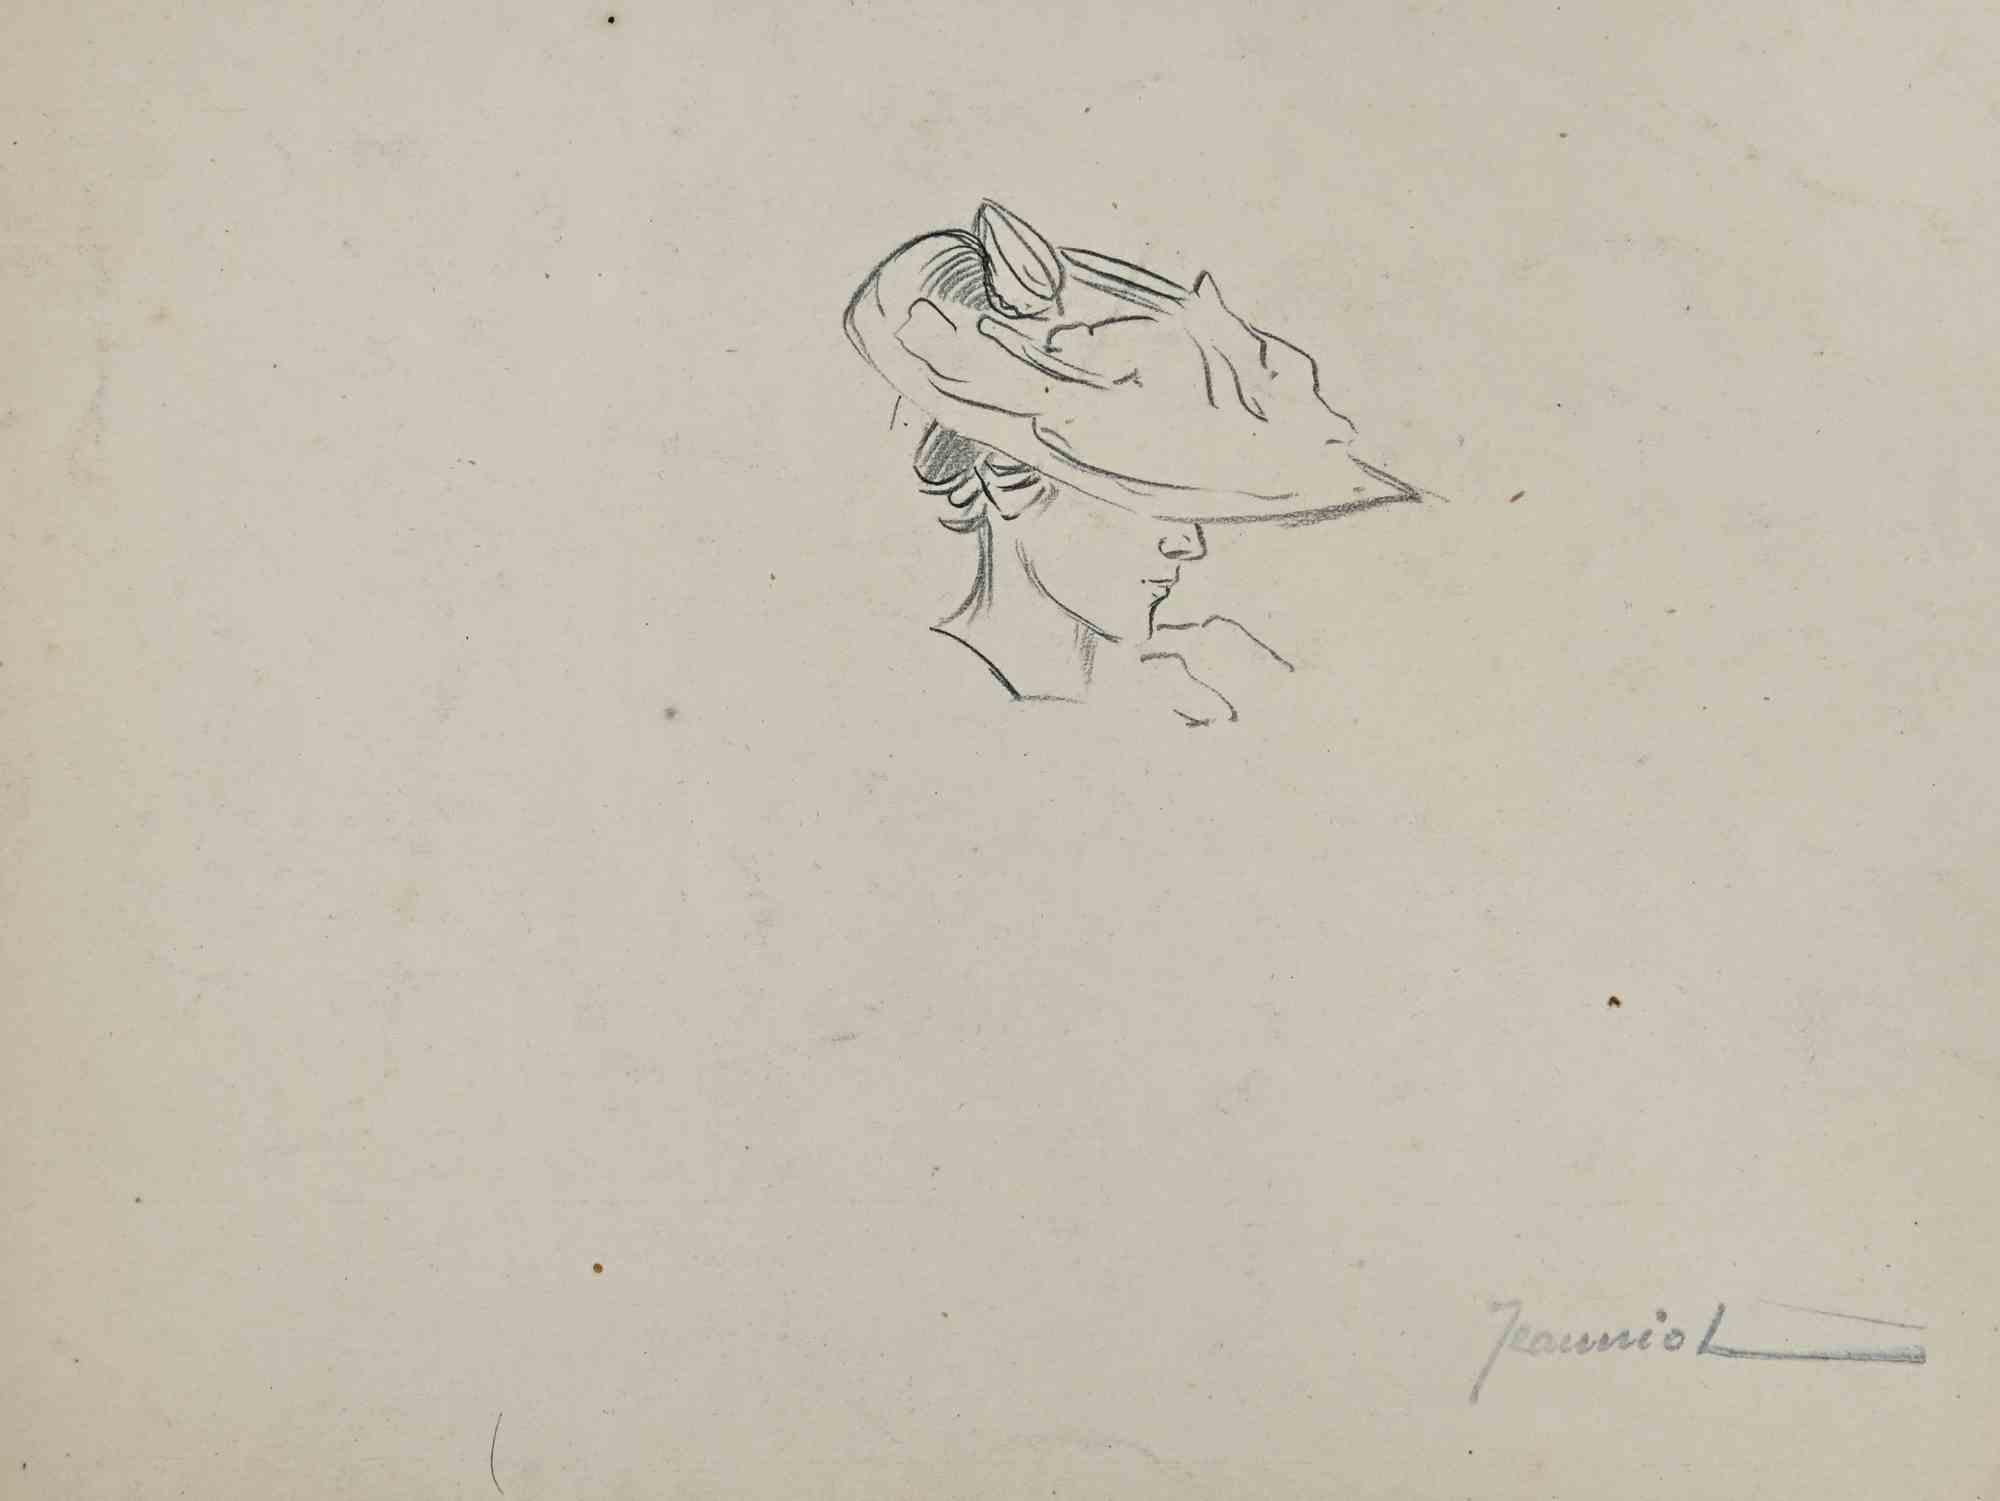 Portrait est un dessin original sur papier réalisé par le peintre Pierre Georges Jeanniot (1848-1934).

Dessin au crayon.

Signé à la main en bas.

Bon état, sauf pour les marges vieillies.

L'œuvre d'art est représentée par des coups de pinceau